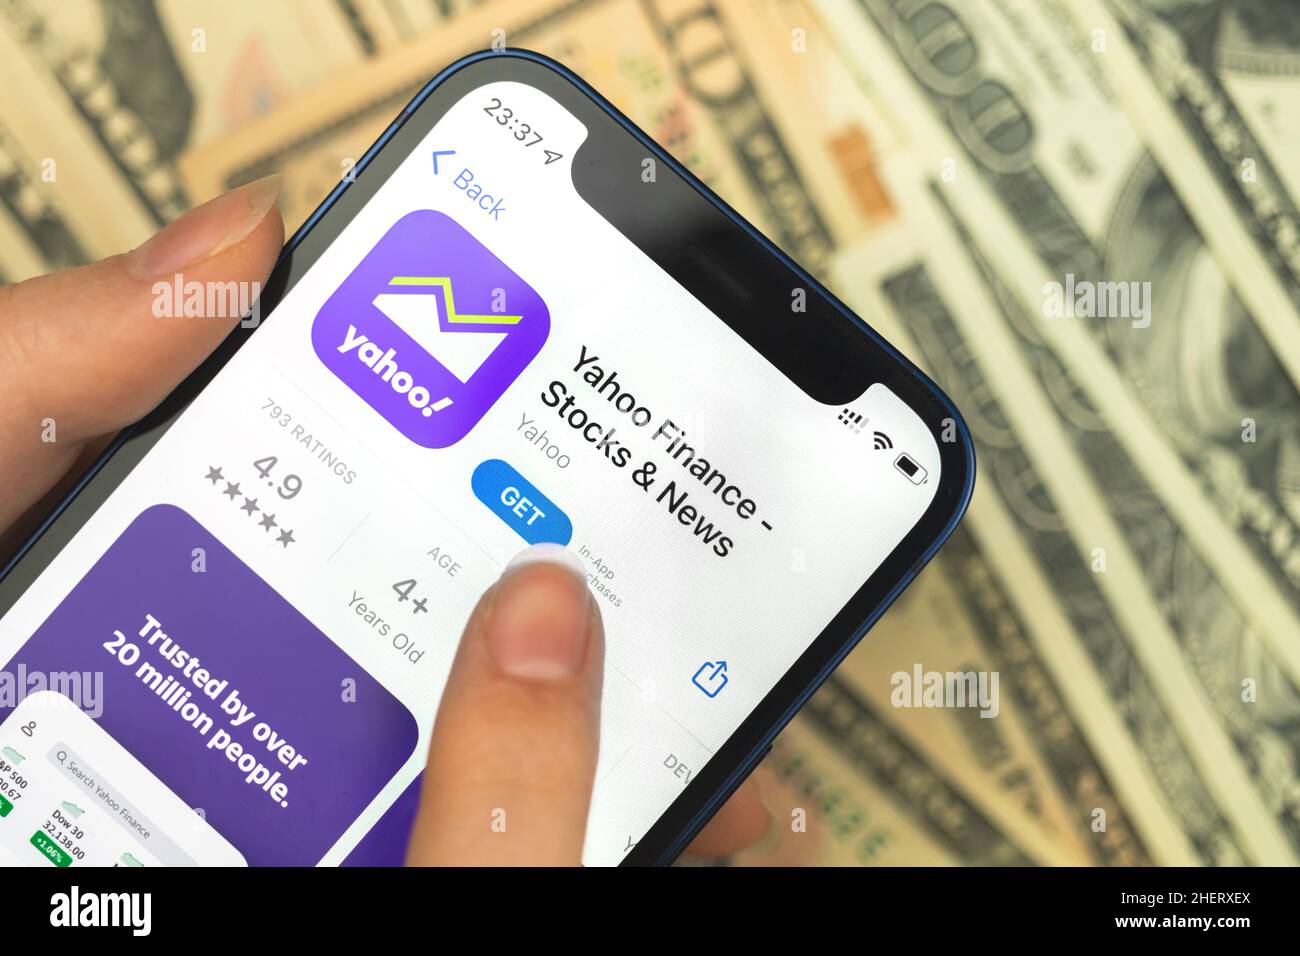 Yahoo Finance iOS